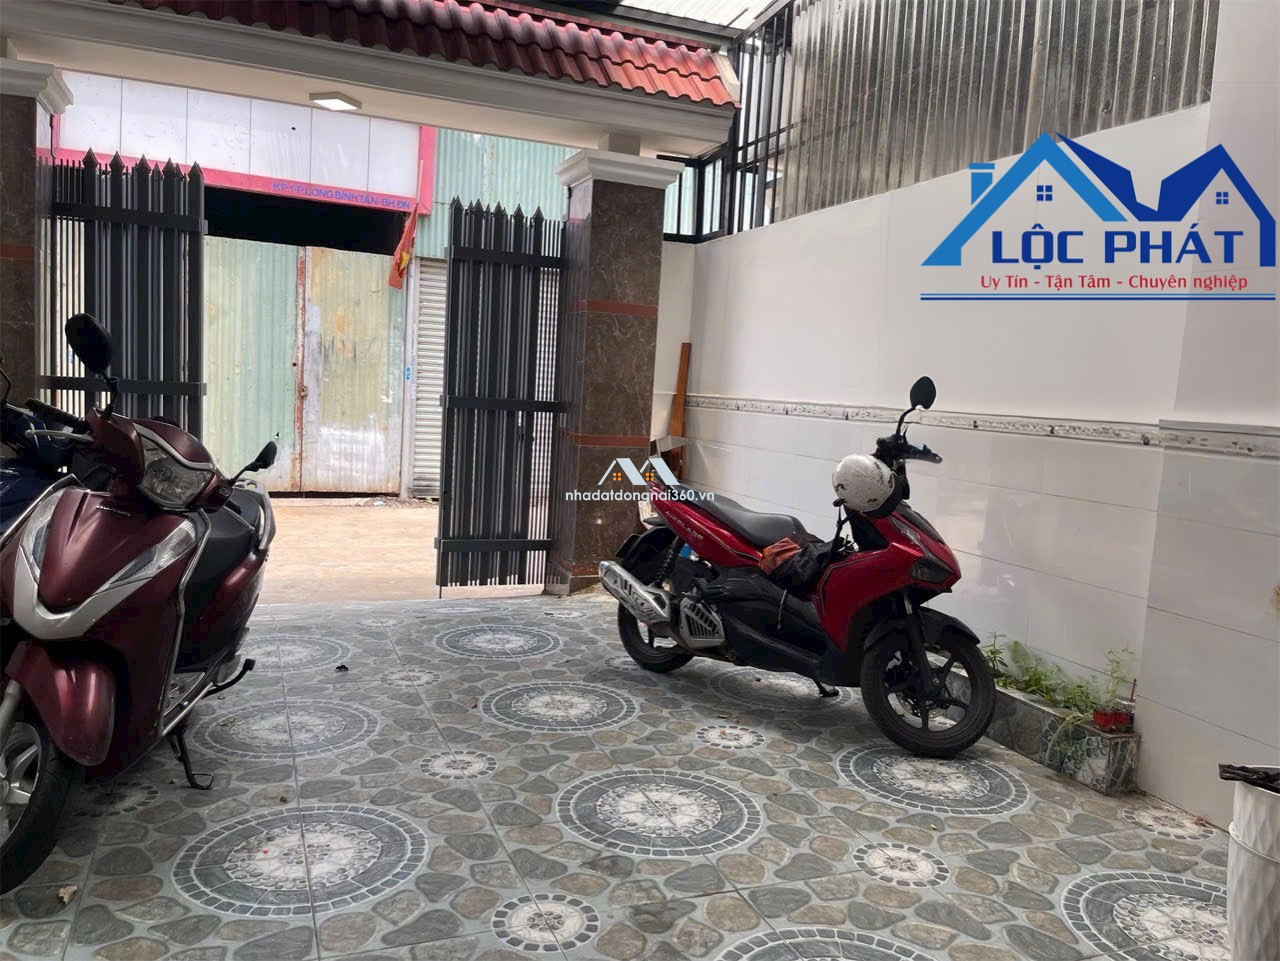 Bán nhà mặt phố tại QL51, Phường Long Bình Tân, Tp. Biên Hòa, Đồng Nai giá 4 tỷ  200 triệu